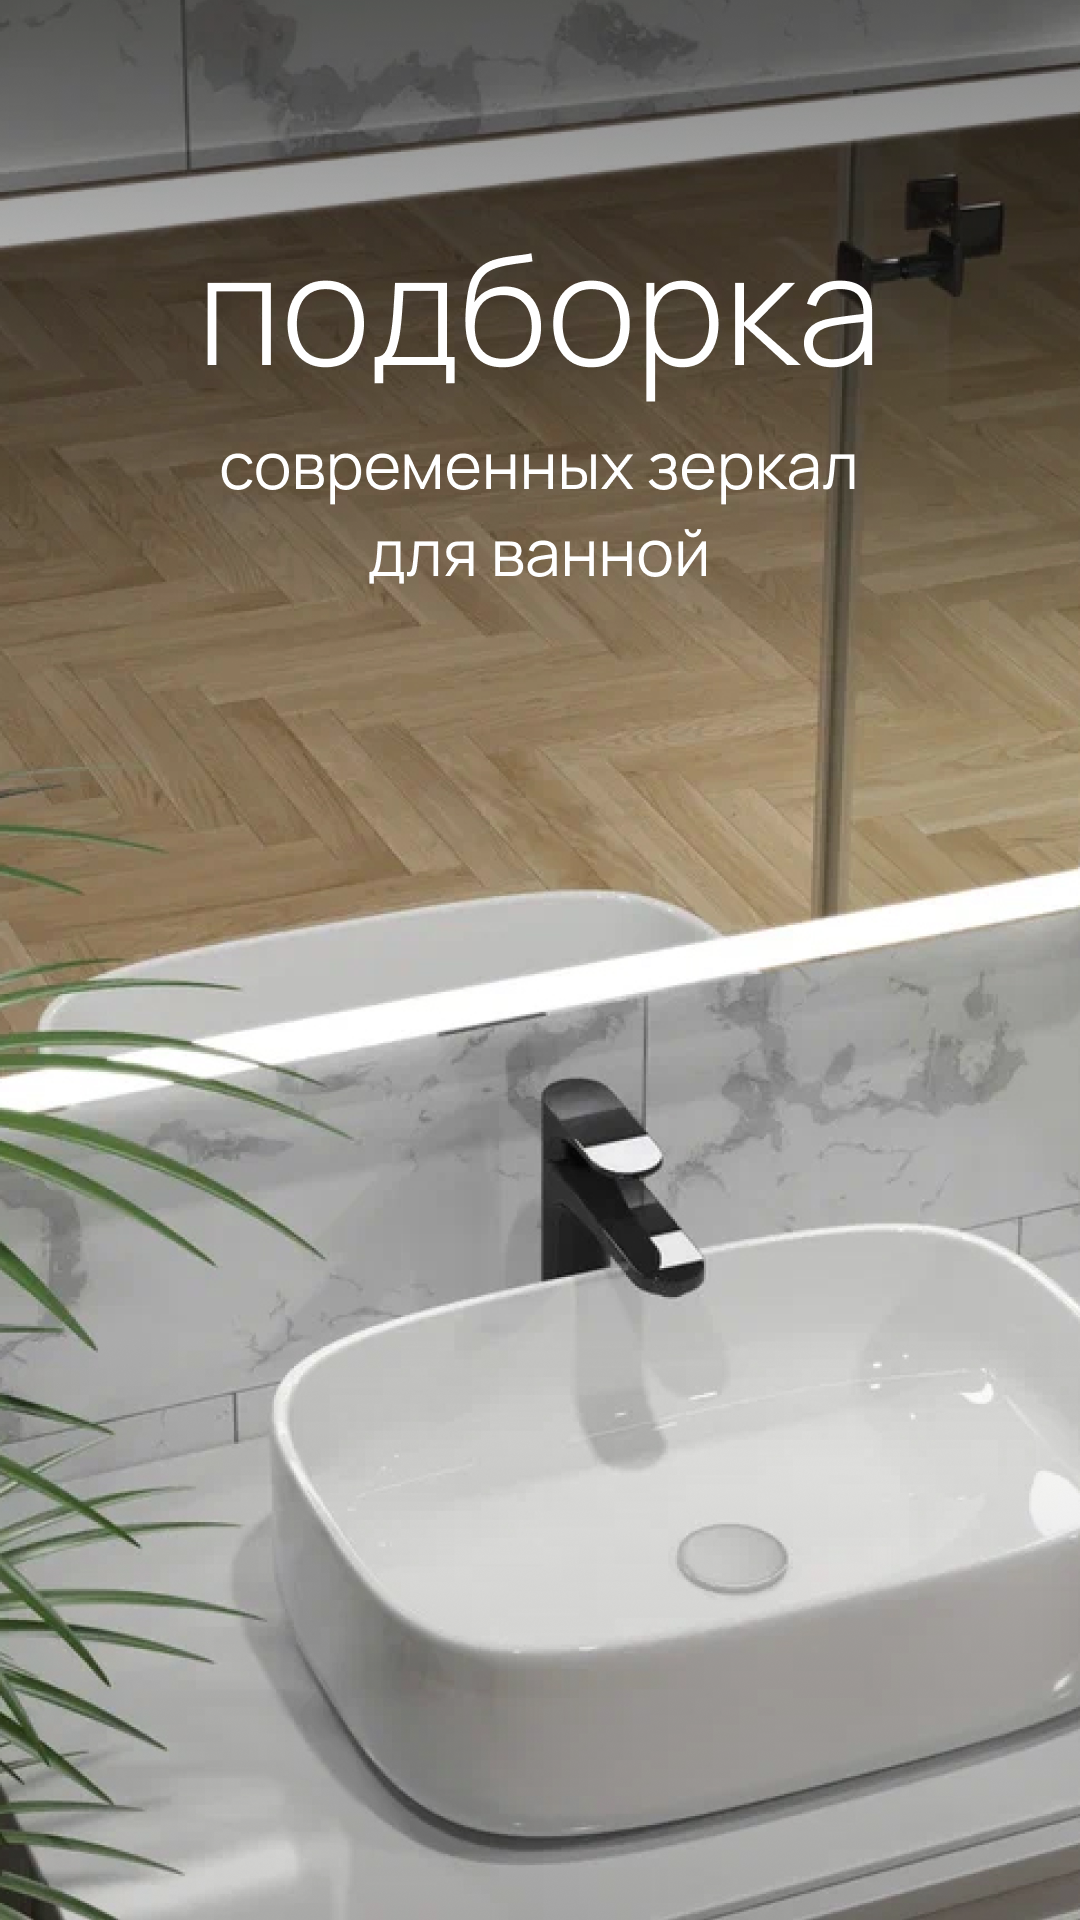 Подборка современных зеркал для ванной комнаты #зеркало #ванная #интерьерванной